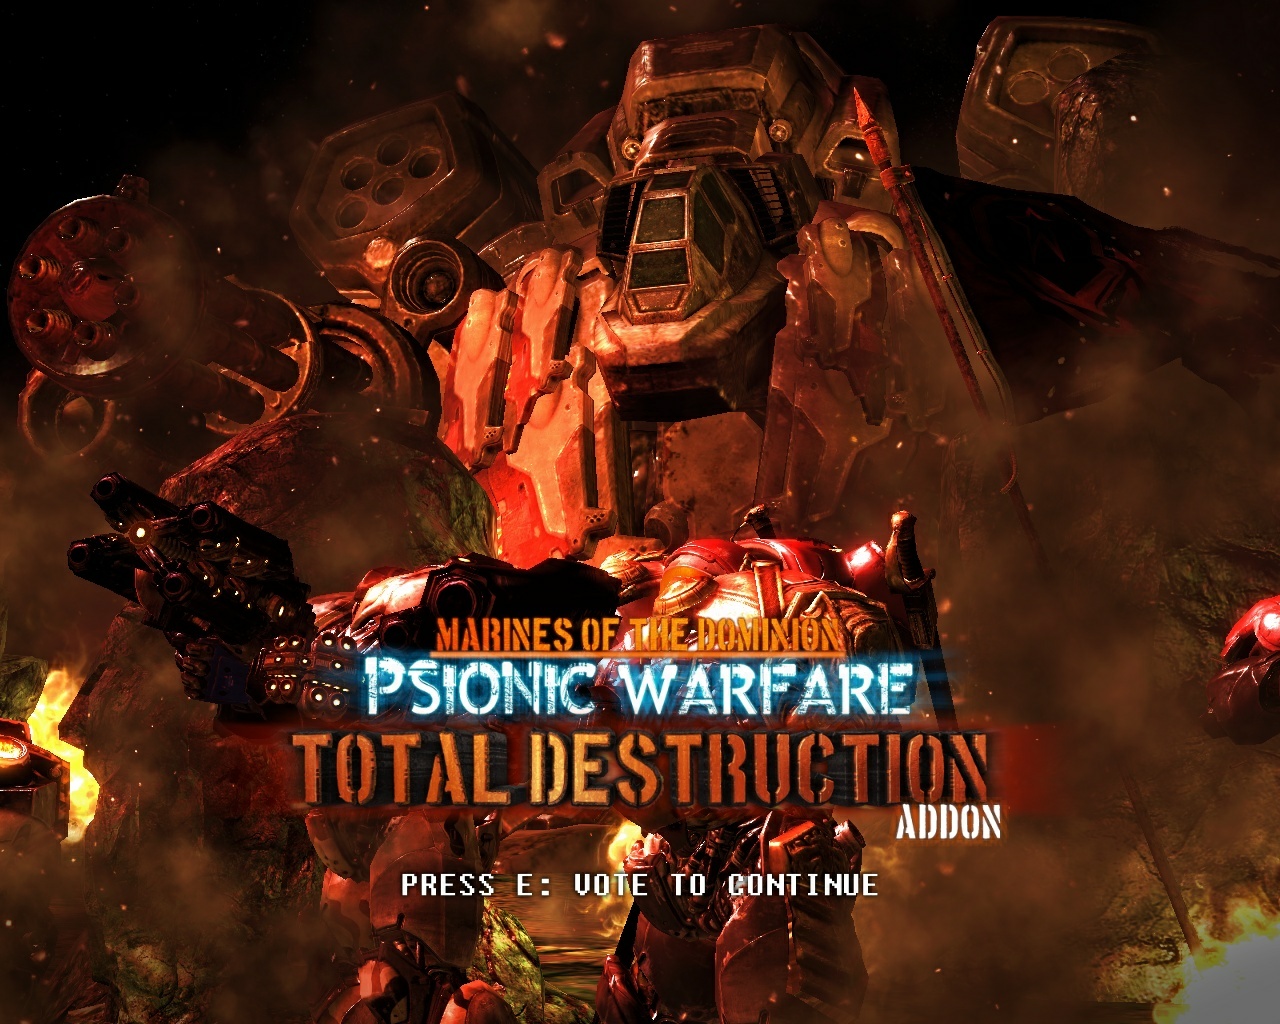 MOTD: Psionic Warfare